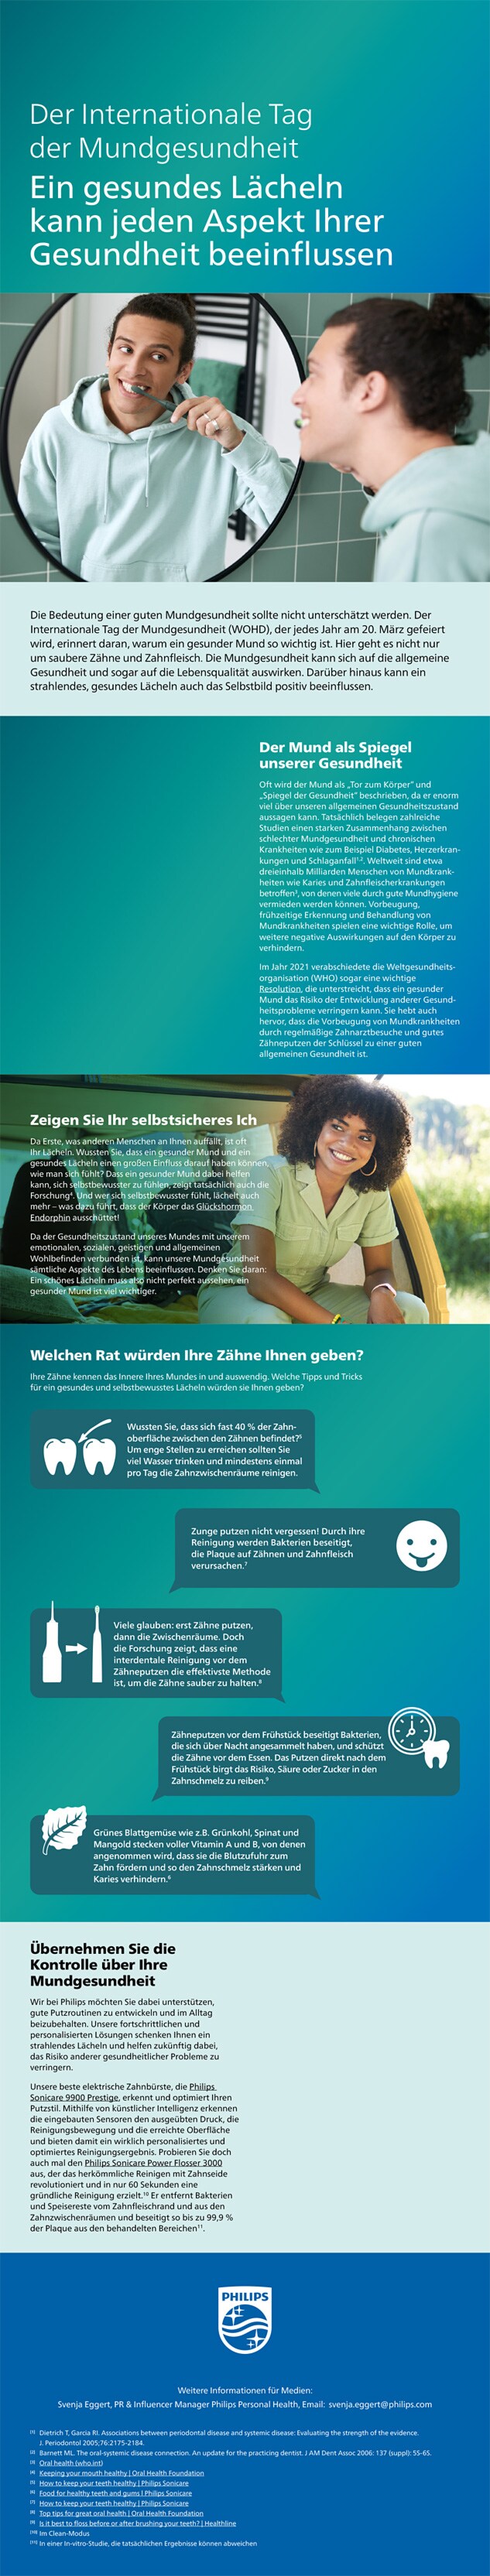 Themensheet: Der Internationale Tag der Mundgesundheit download pdf